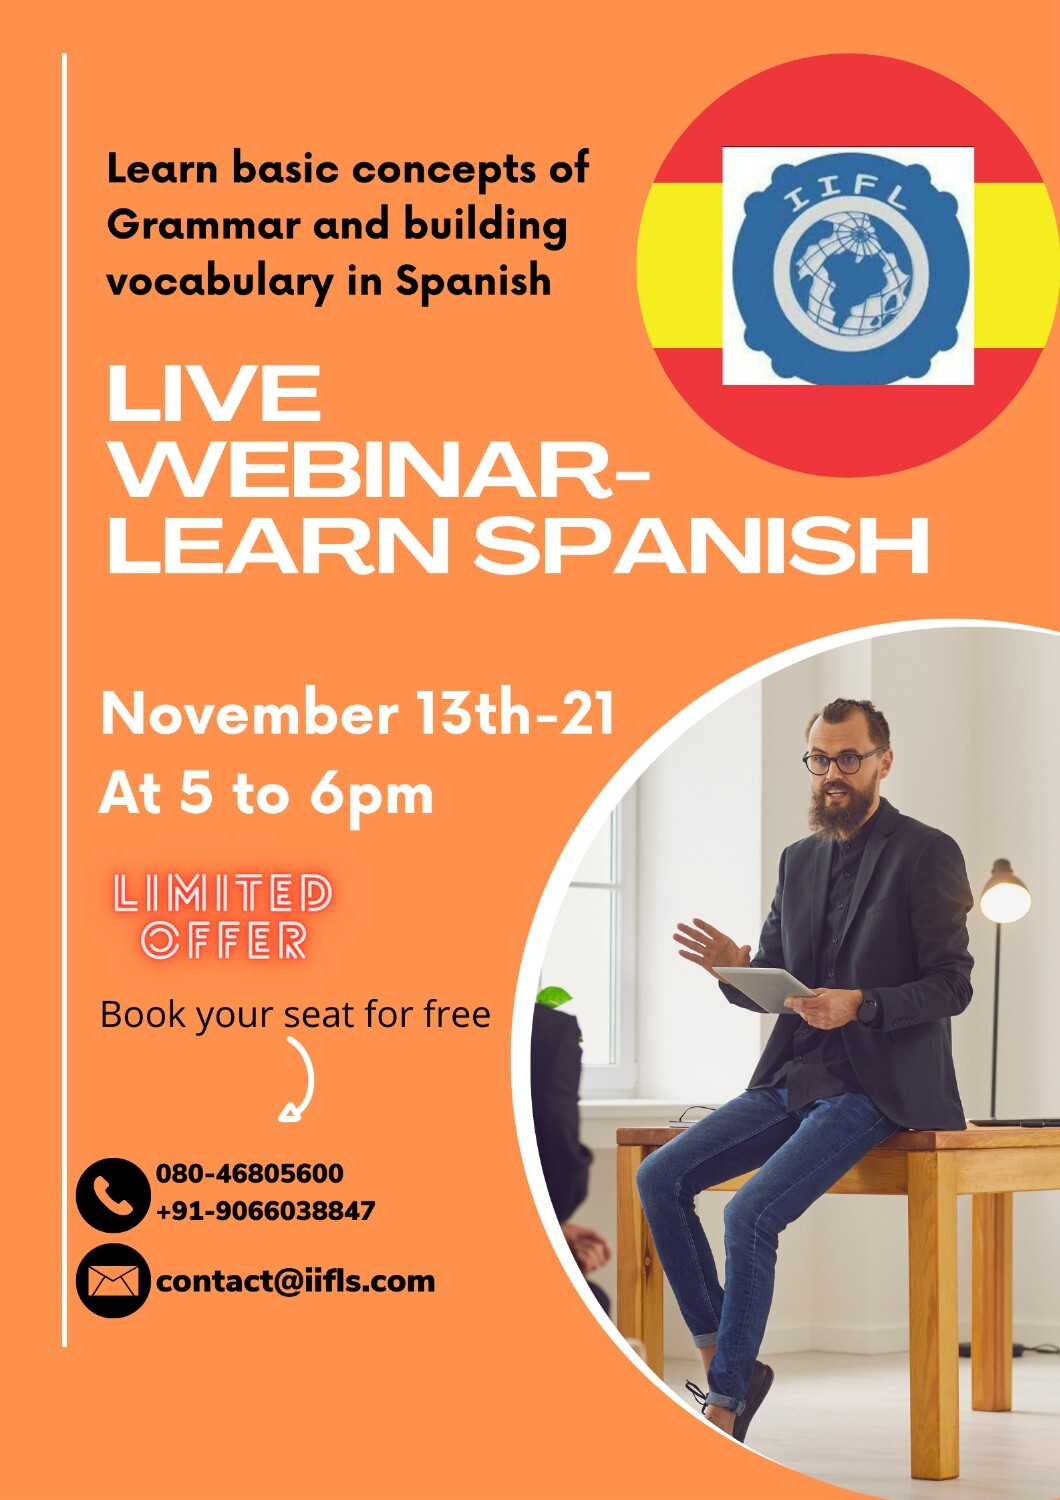 Live Webinar Learn Spanish